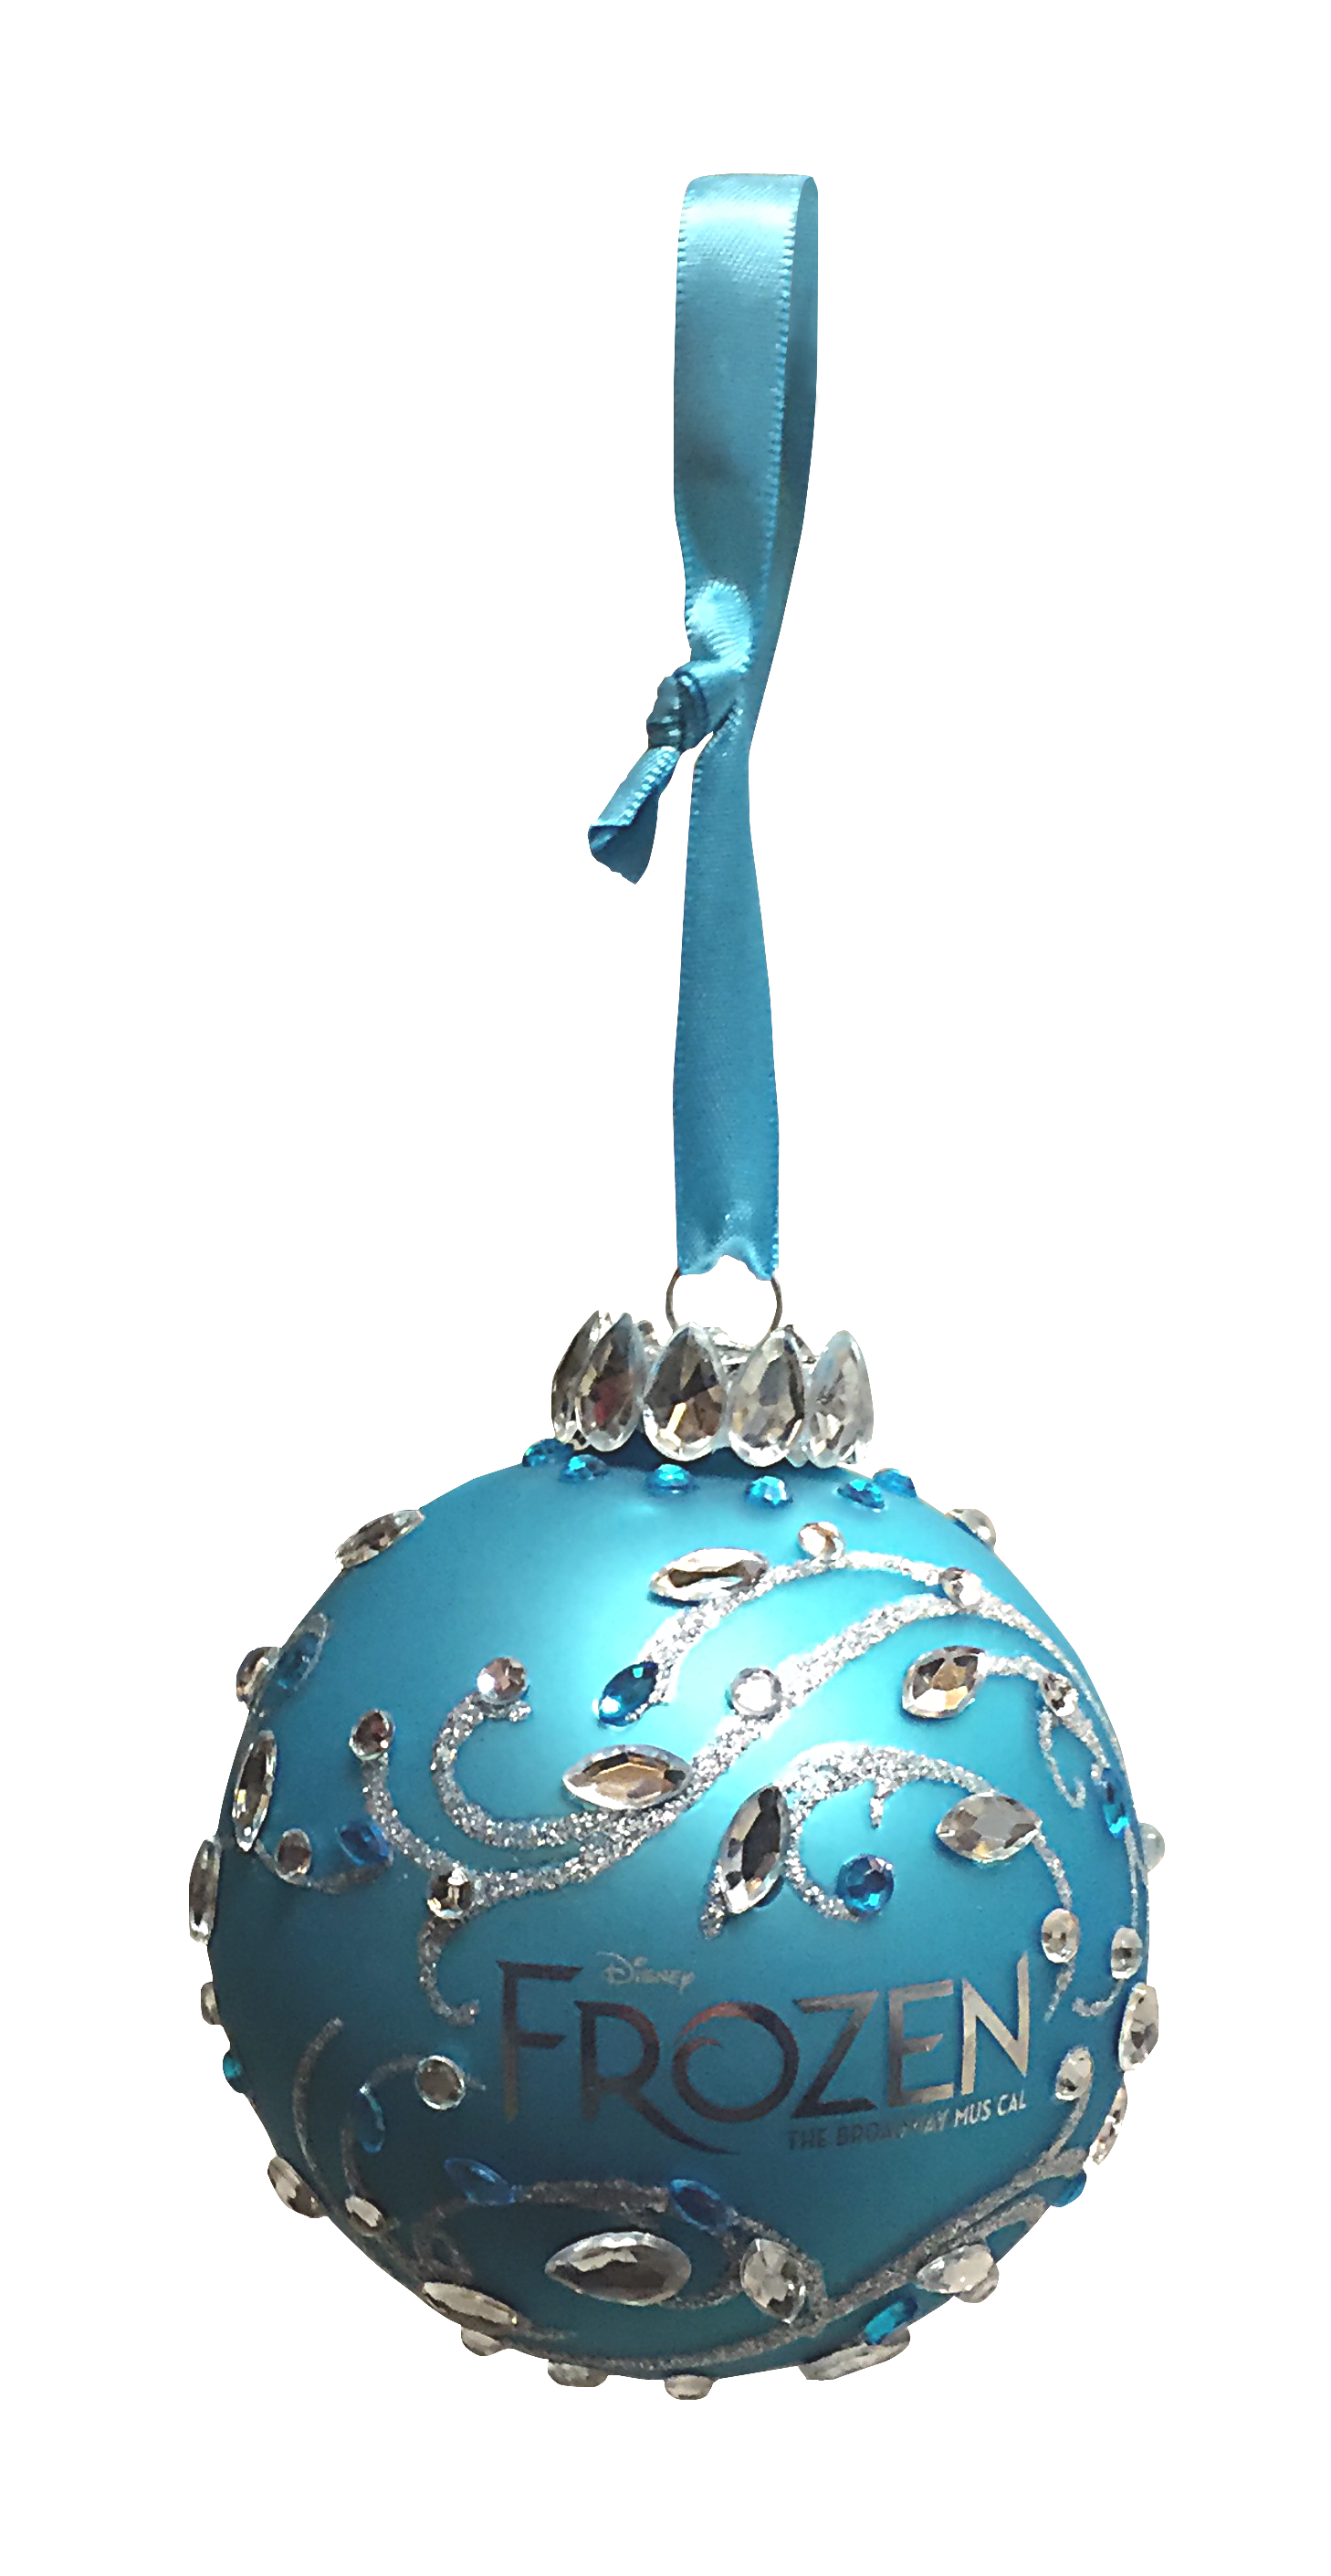 Frozen the.Broadway Musical Glass Ball Ornament